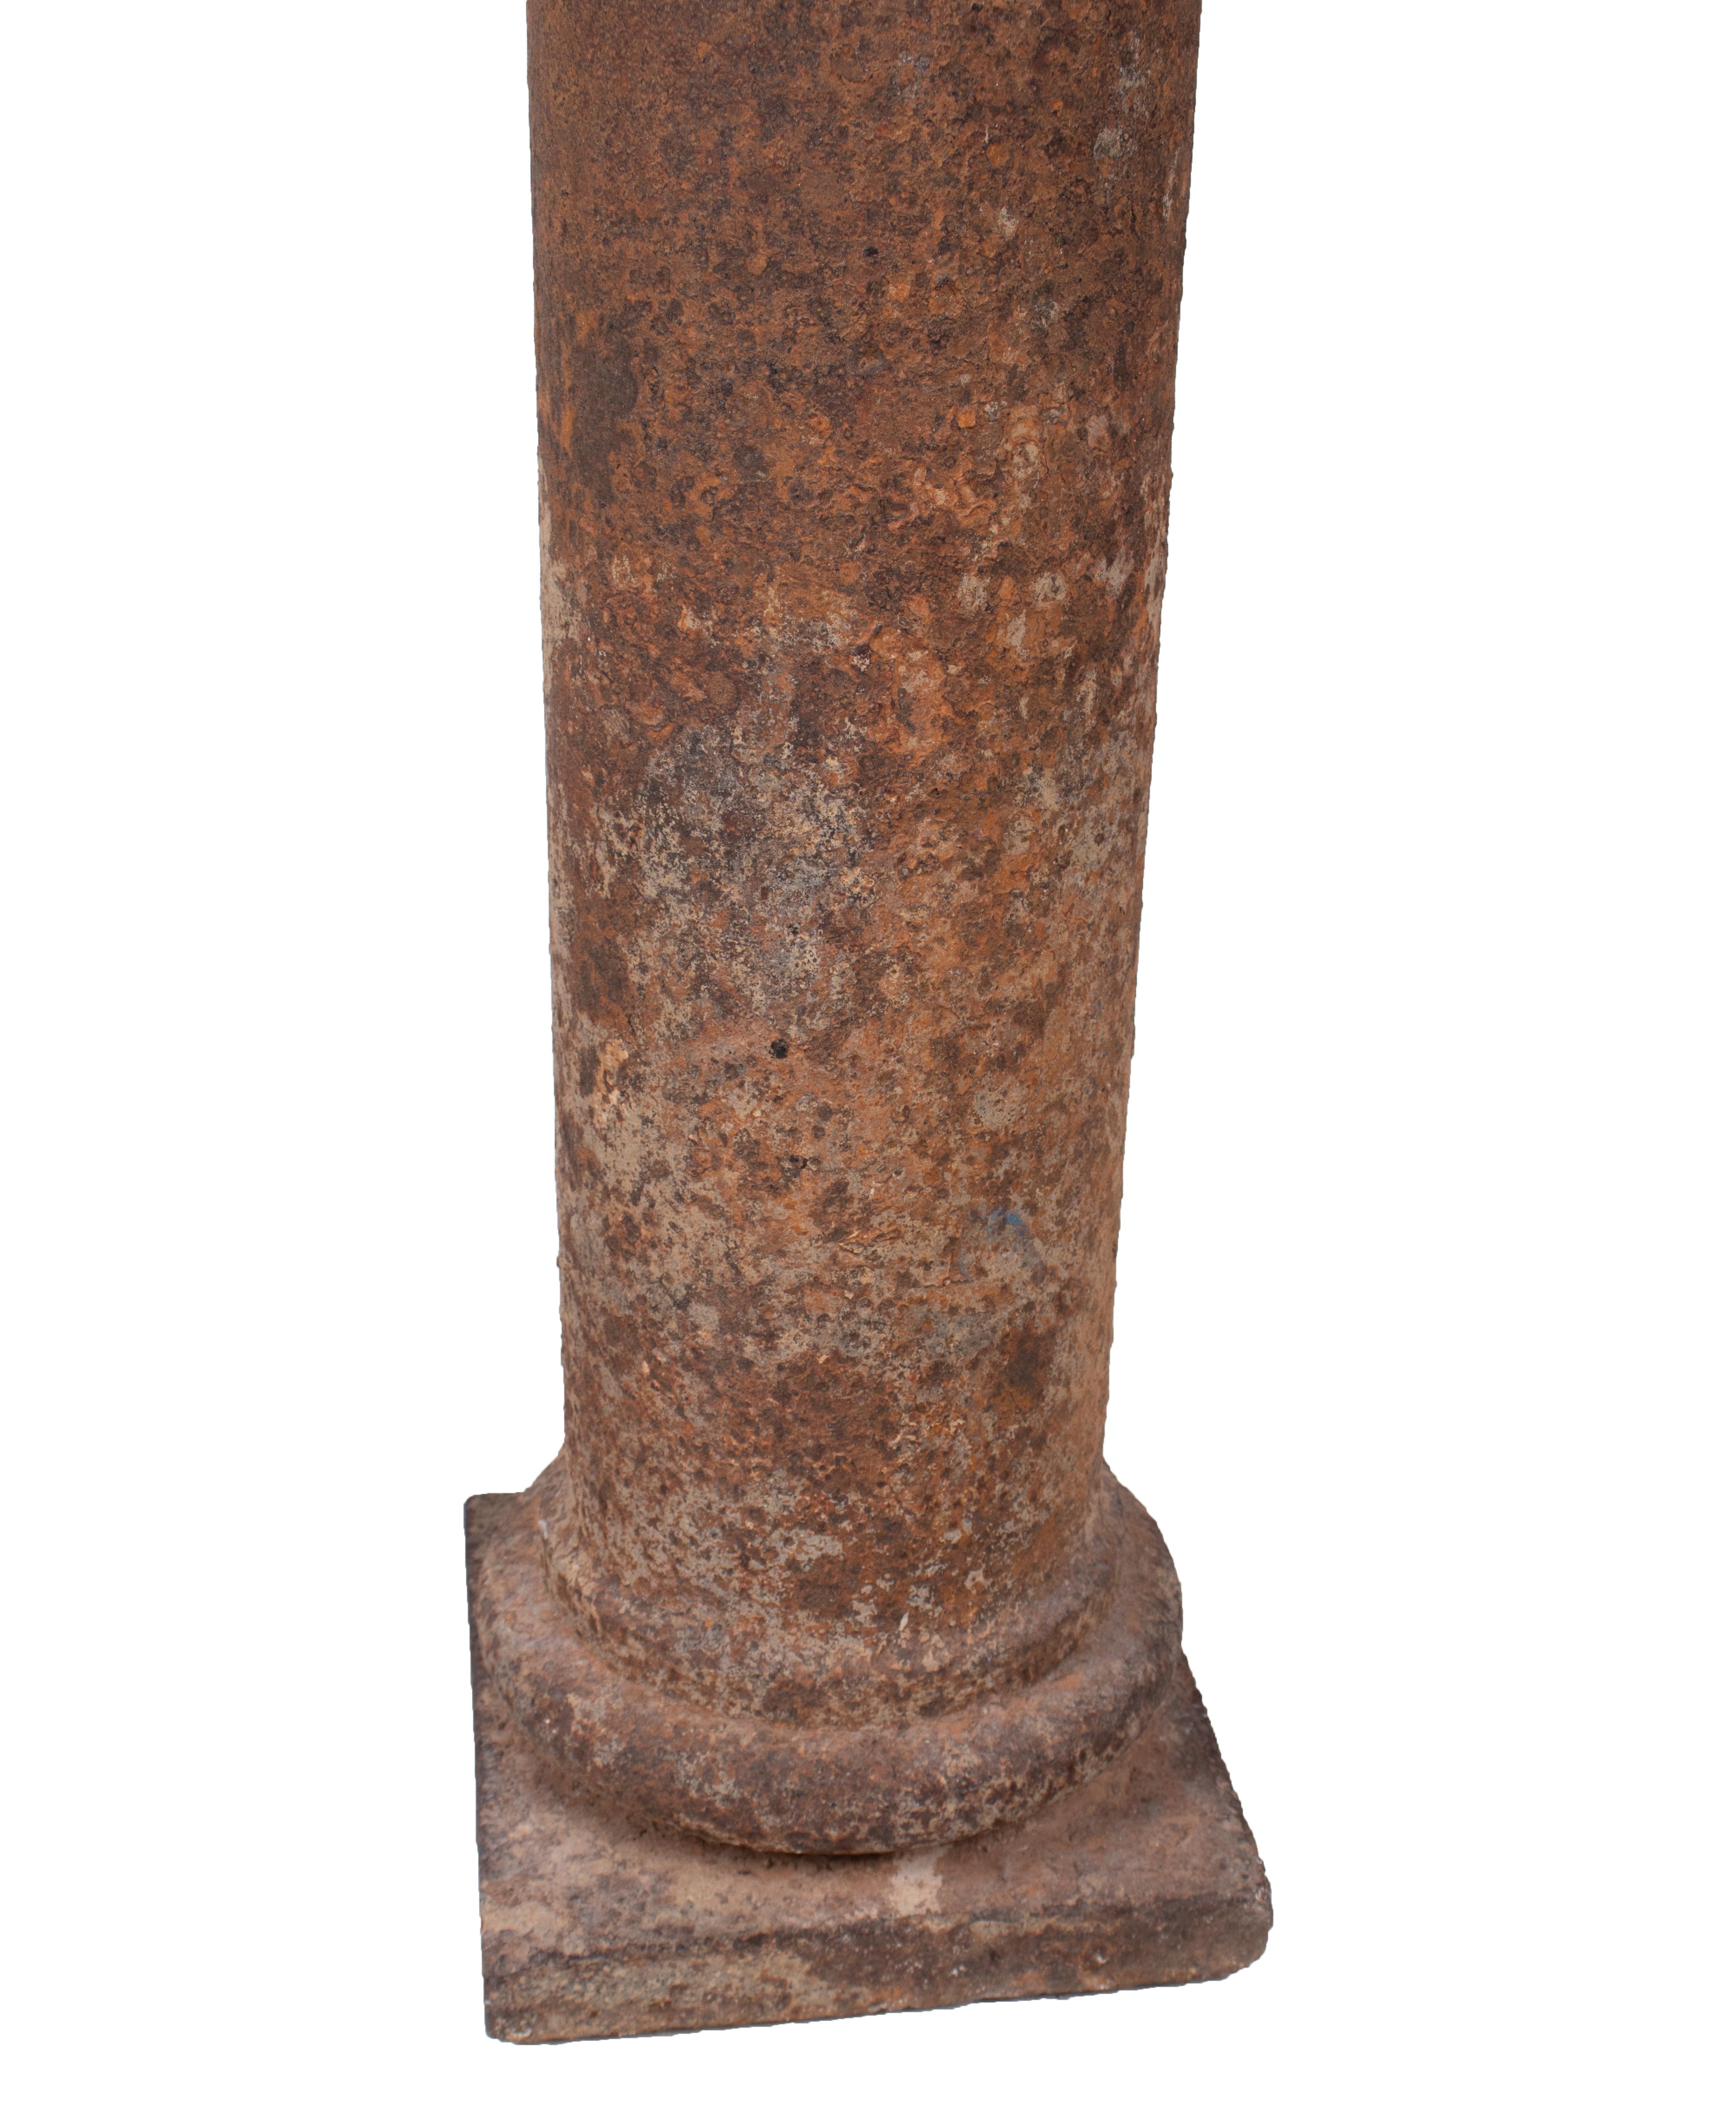 cast iron columns for sale